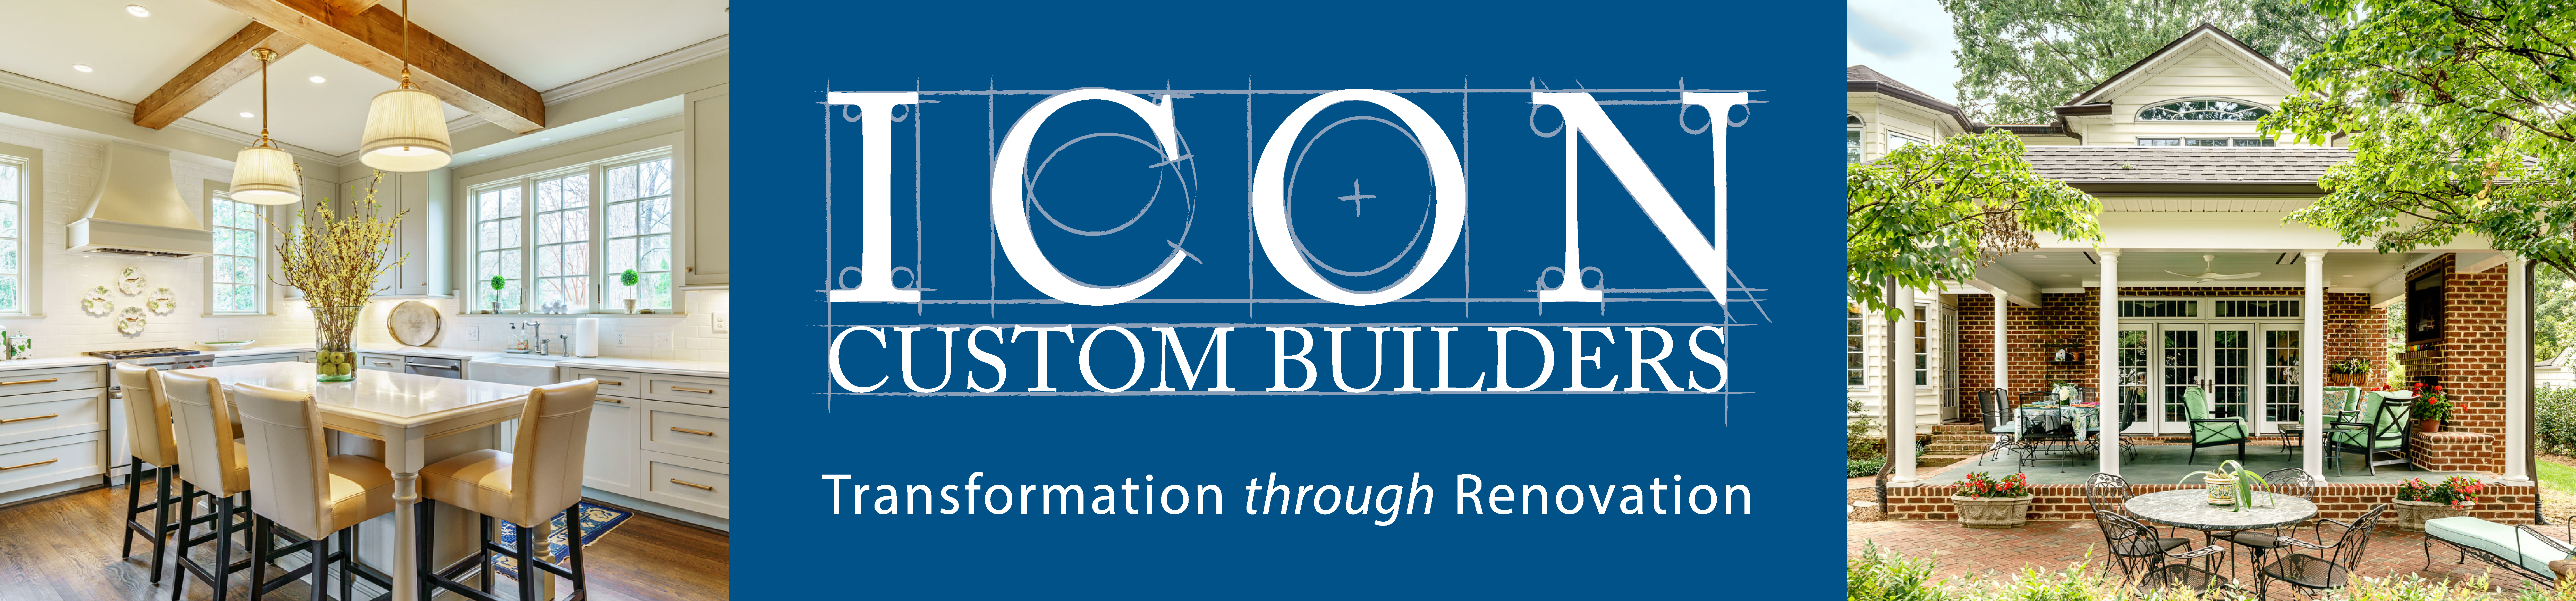 ICON Custom Builders